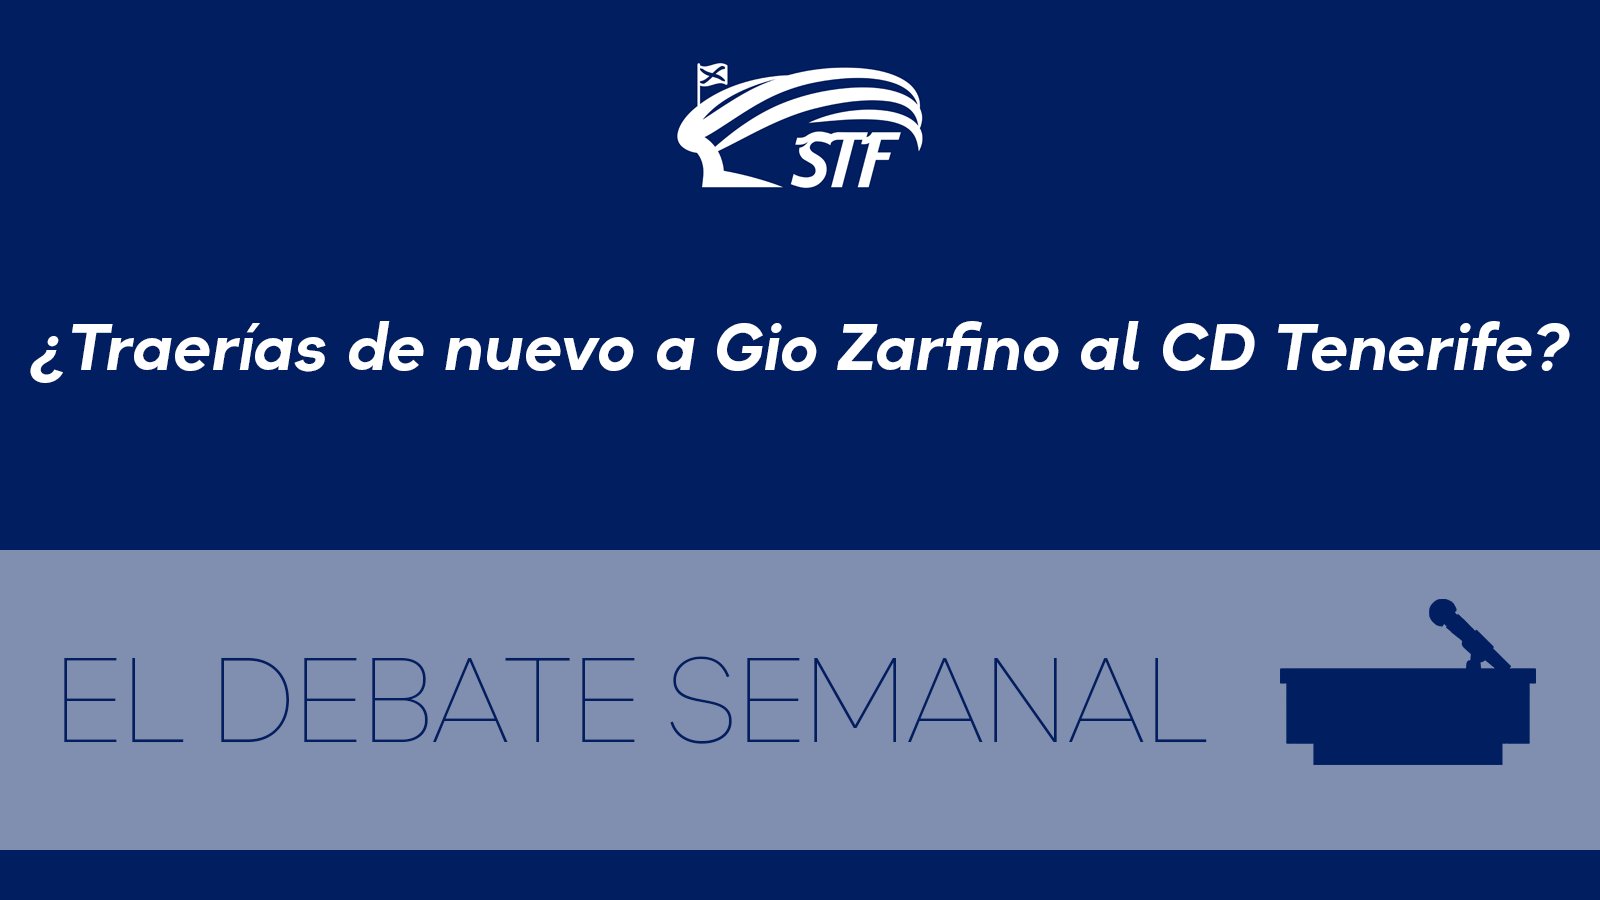 El Debate Semanal: ¿Traerías de nuevo a Gio Zarfino al CD Tenerife? El 67% dice sí